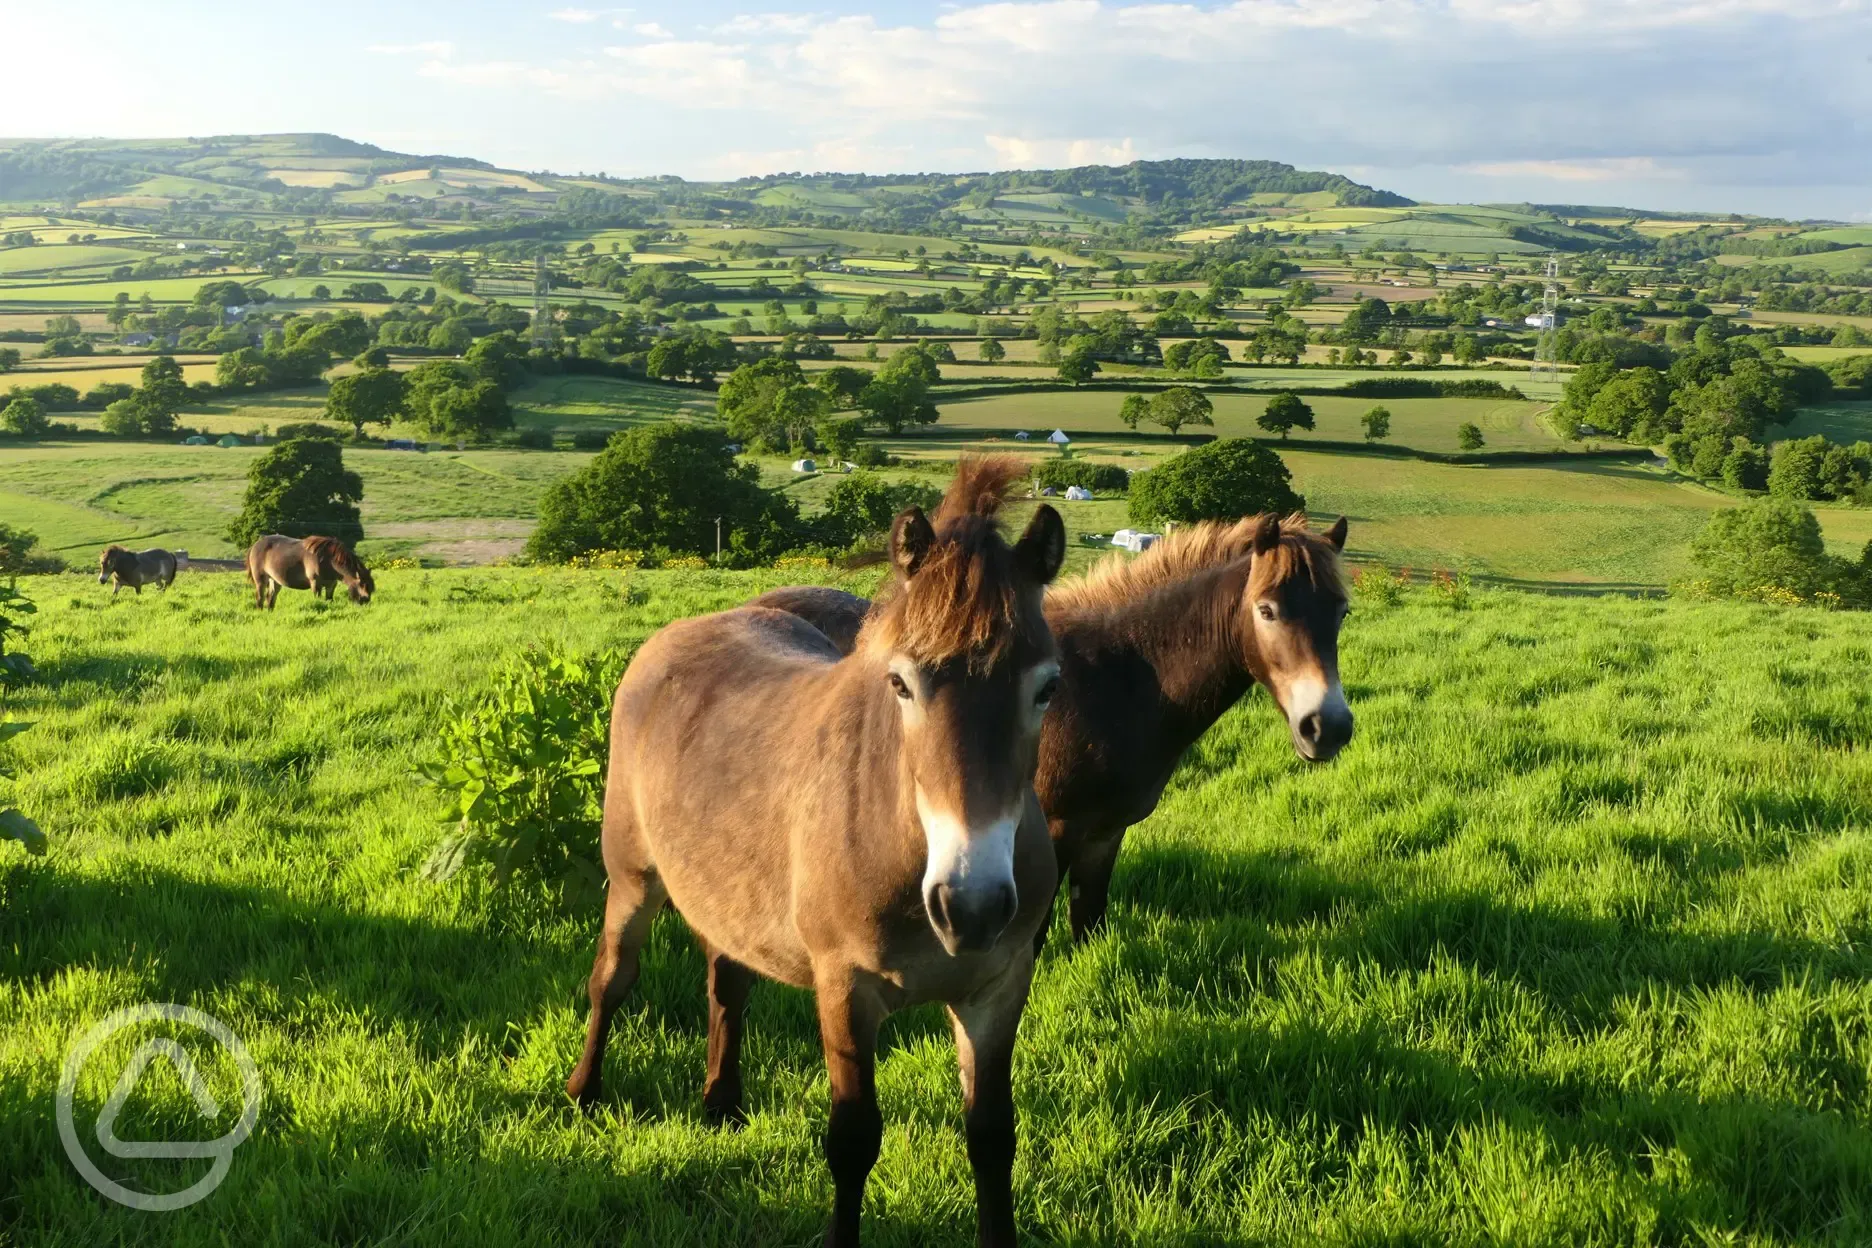 The Exmoor ponies